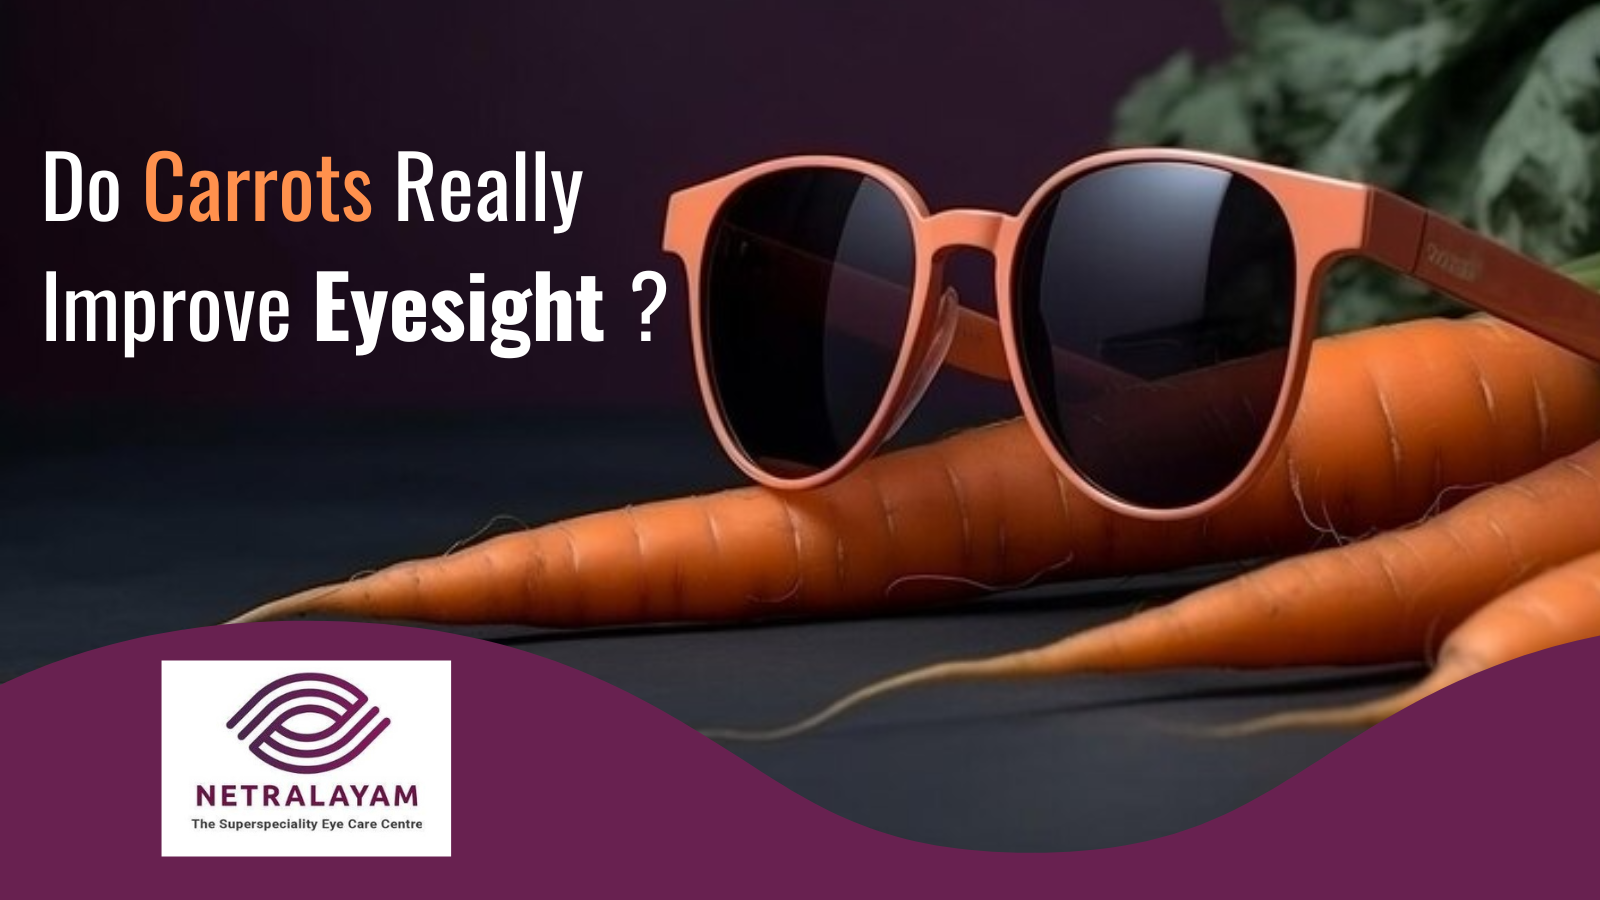 Do Carrots Really Improve Eyesight?